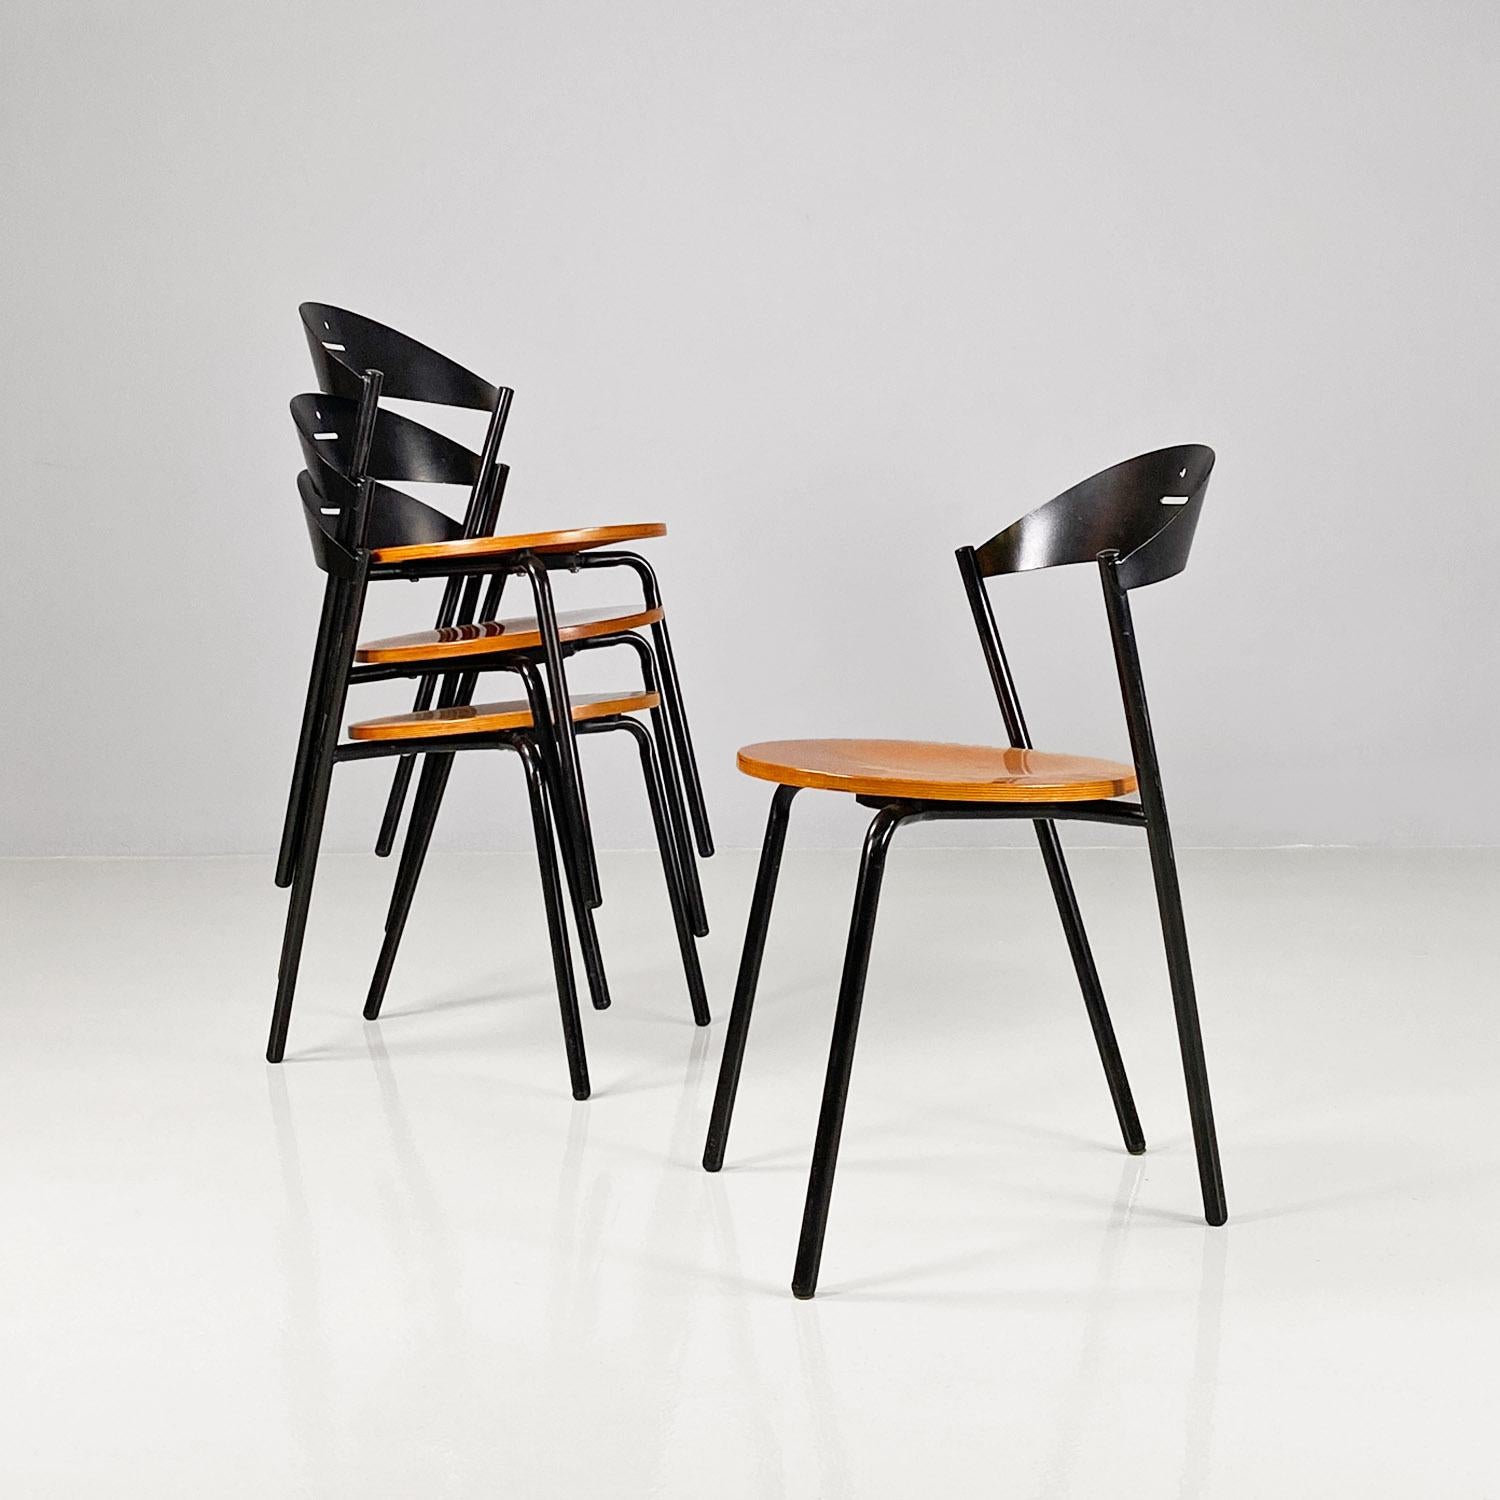 Ensemble moderne italien de quatre chaises Fly Line en métal gris, laiton et bois massif, années 1980.
Les chaises du modèle Fly Line ont une structure métallique gris foncé, ainsi que le dossier, tandis que l'assise est ronde et en bois massif,